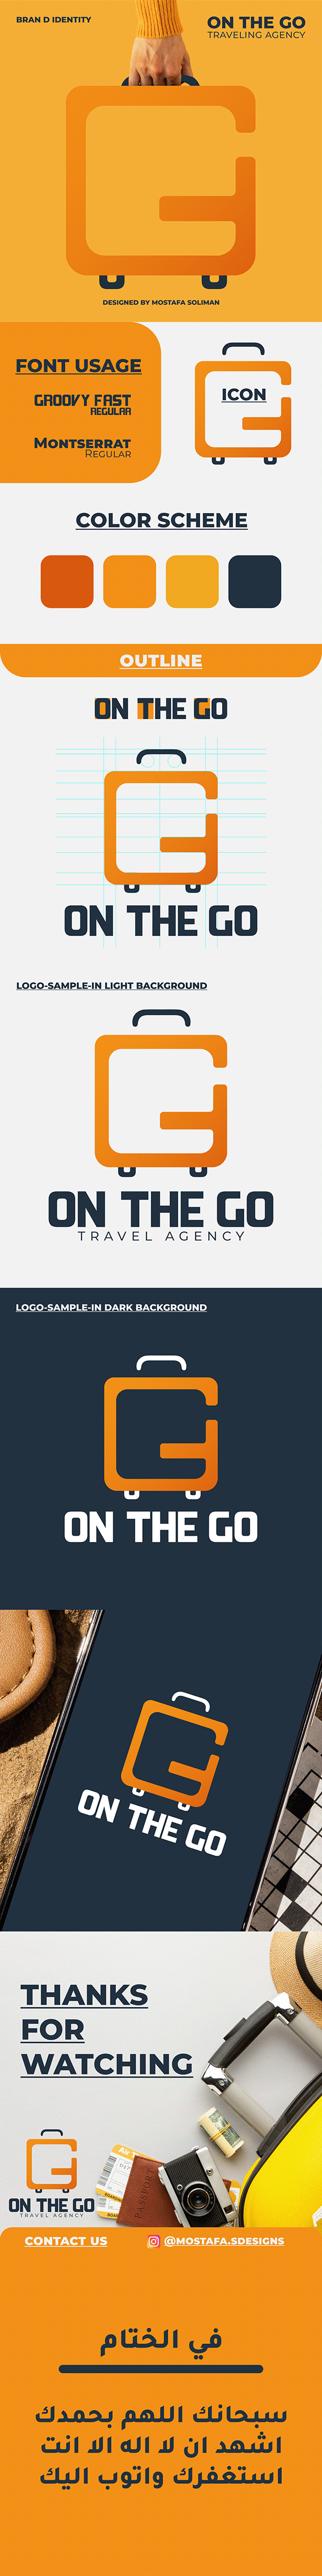 "OnTheGo" traveling agency logo,identity